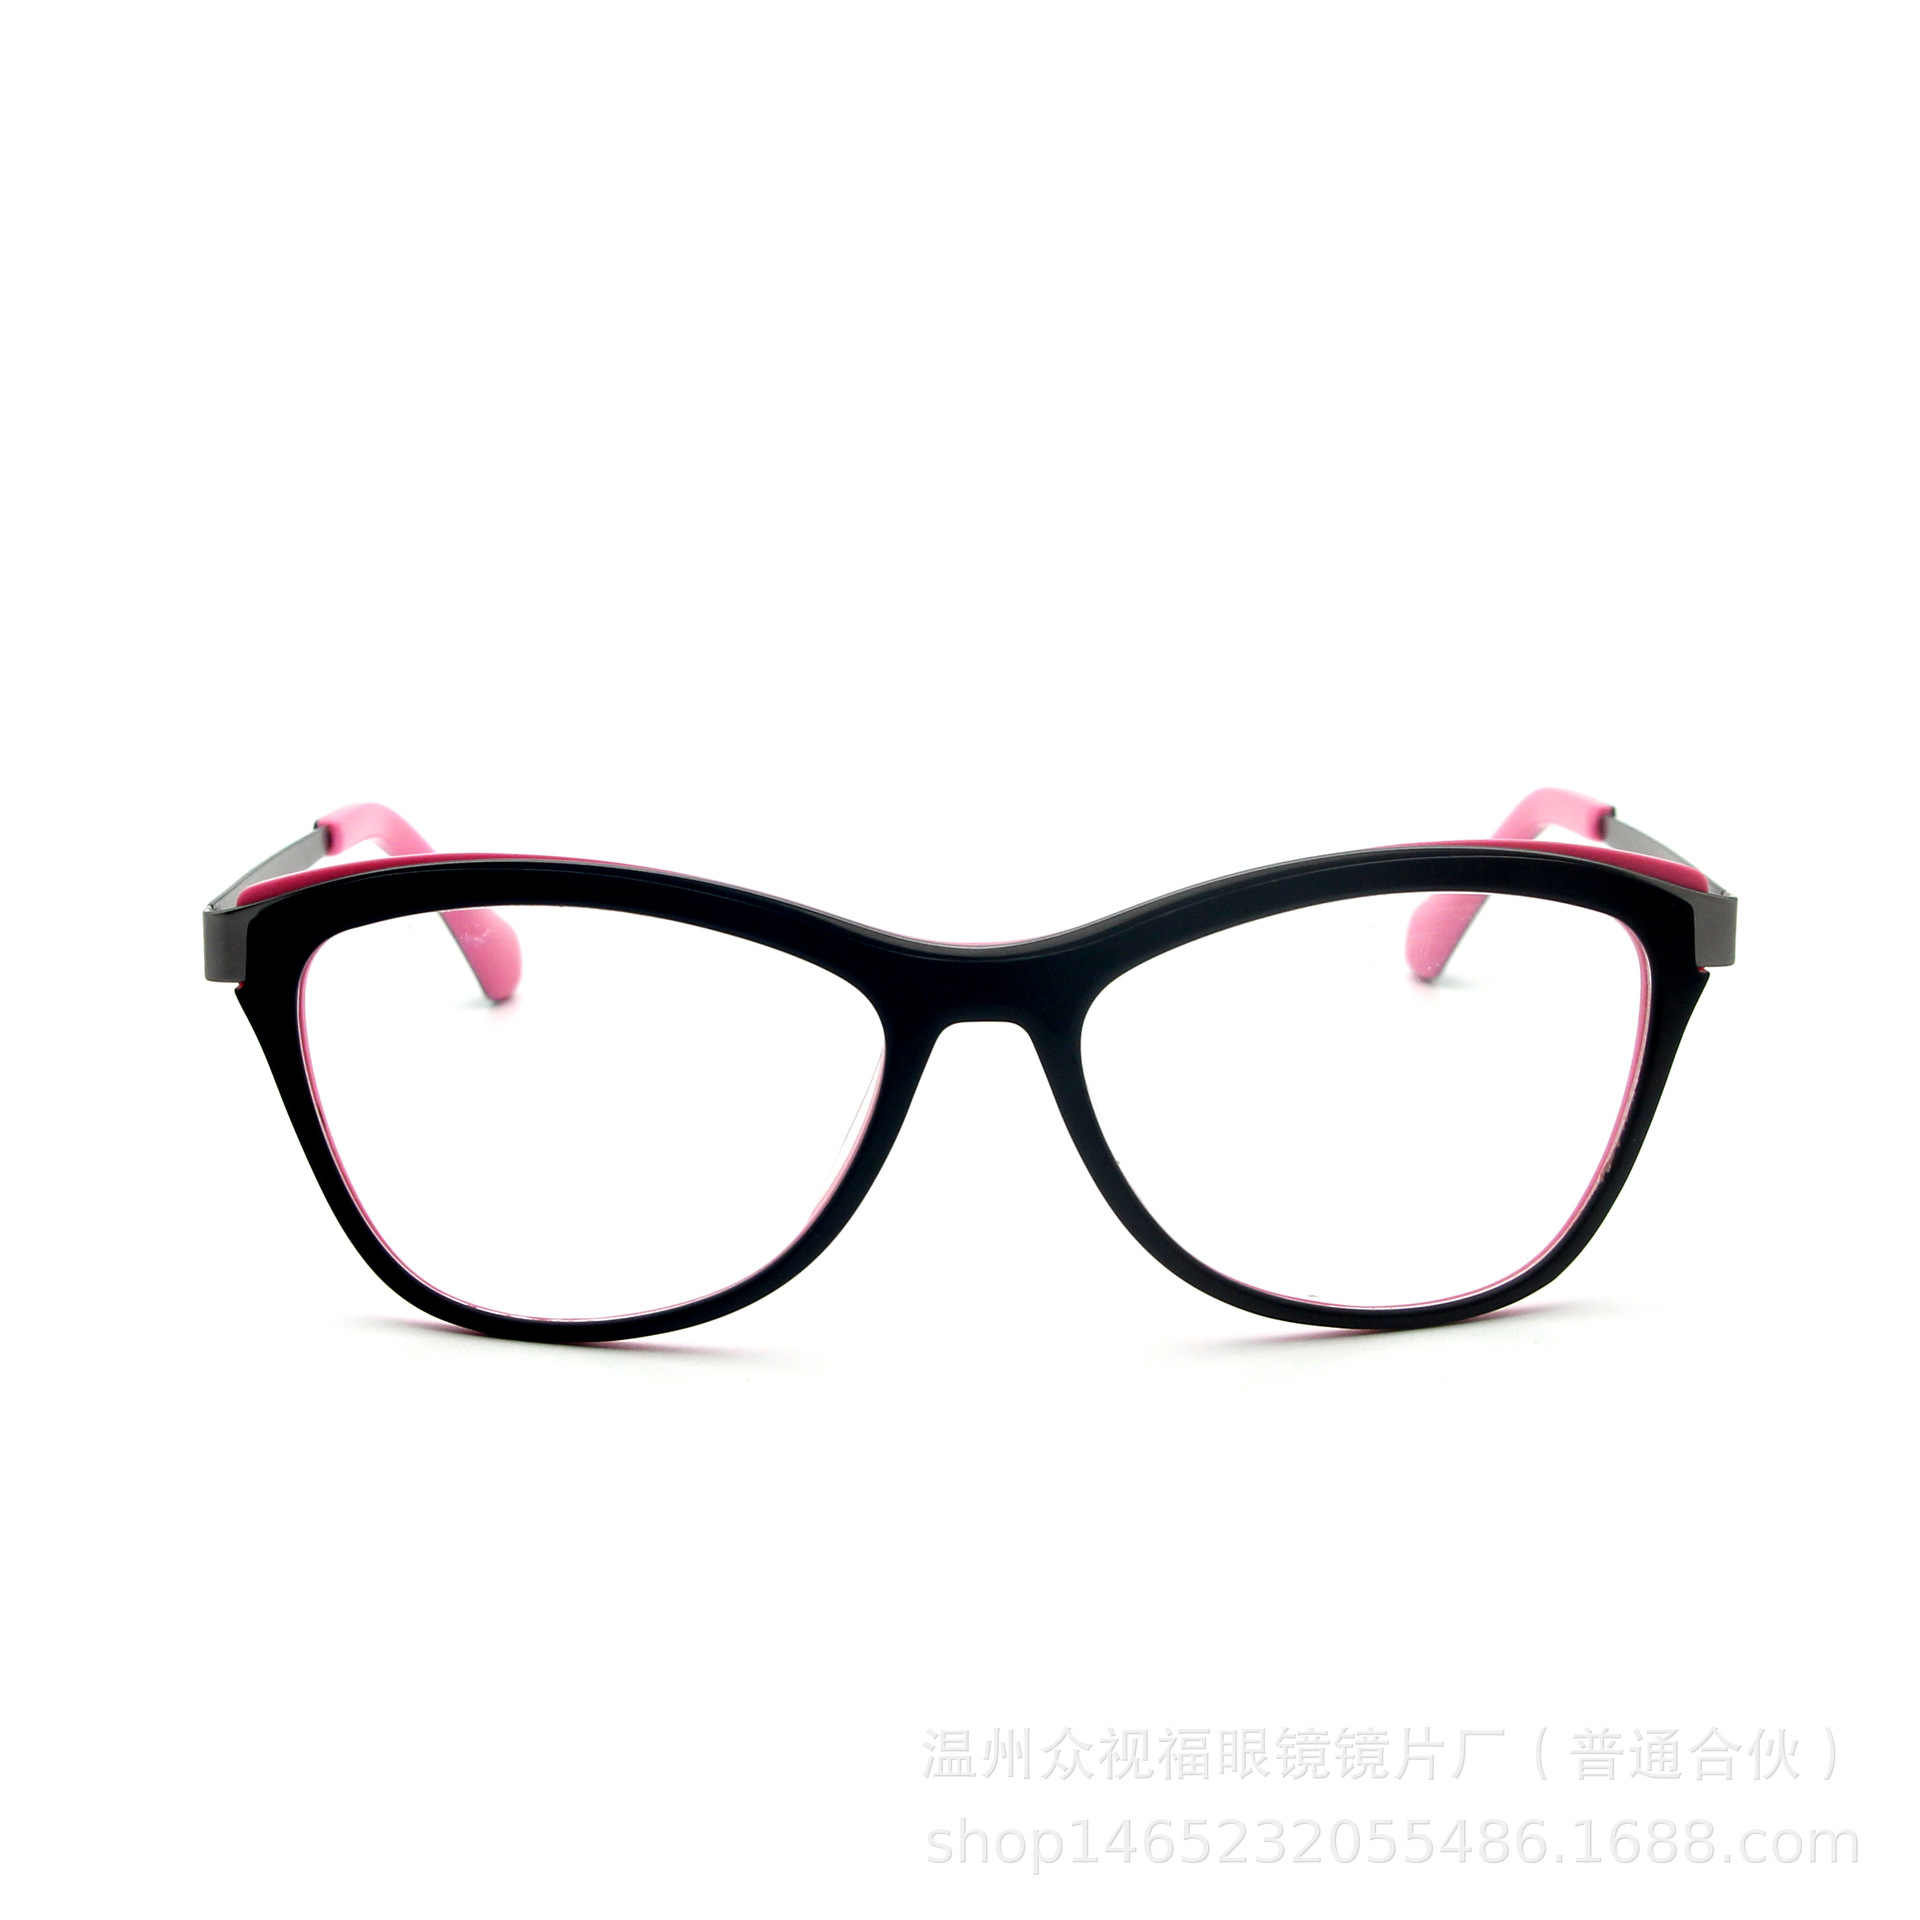 温州高端眼镜厂家 潮款金属圆框太阳镜批发 可来样定制墨镜示例图11